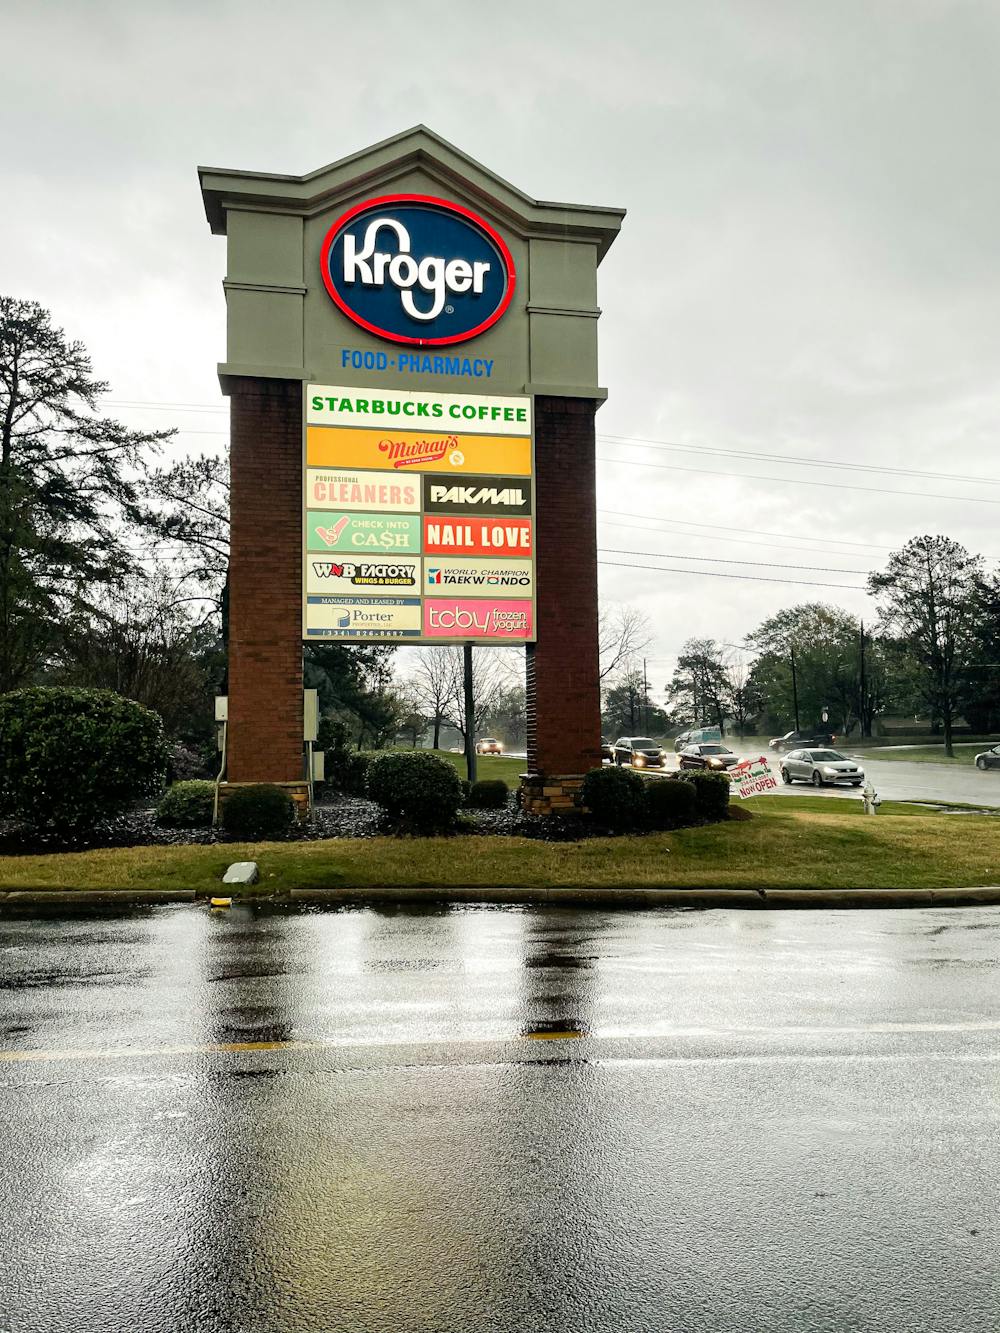 <p>Kroger Sign&nbsp;</p>
<p>04/06/22&nbsp;</p>
<p>&nbsp;Plainsman's Choice Best Grocery Store</p>